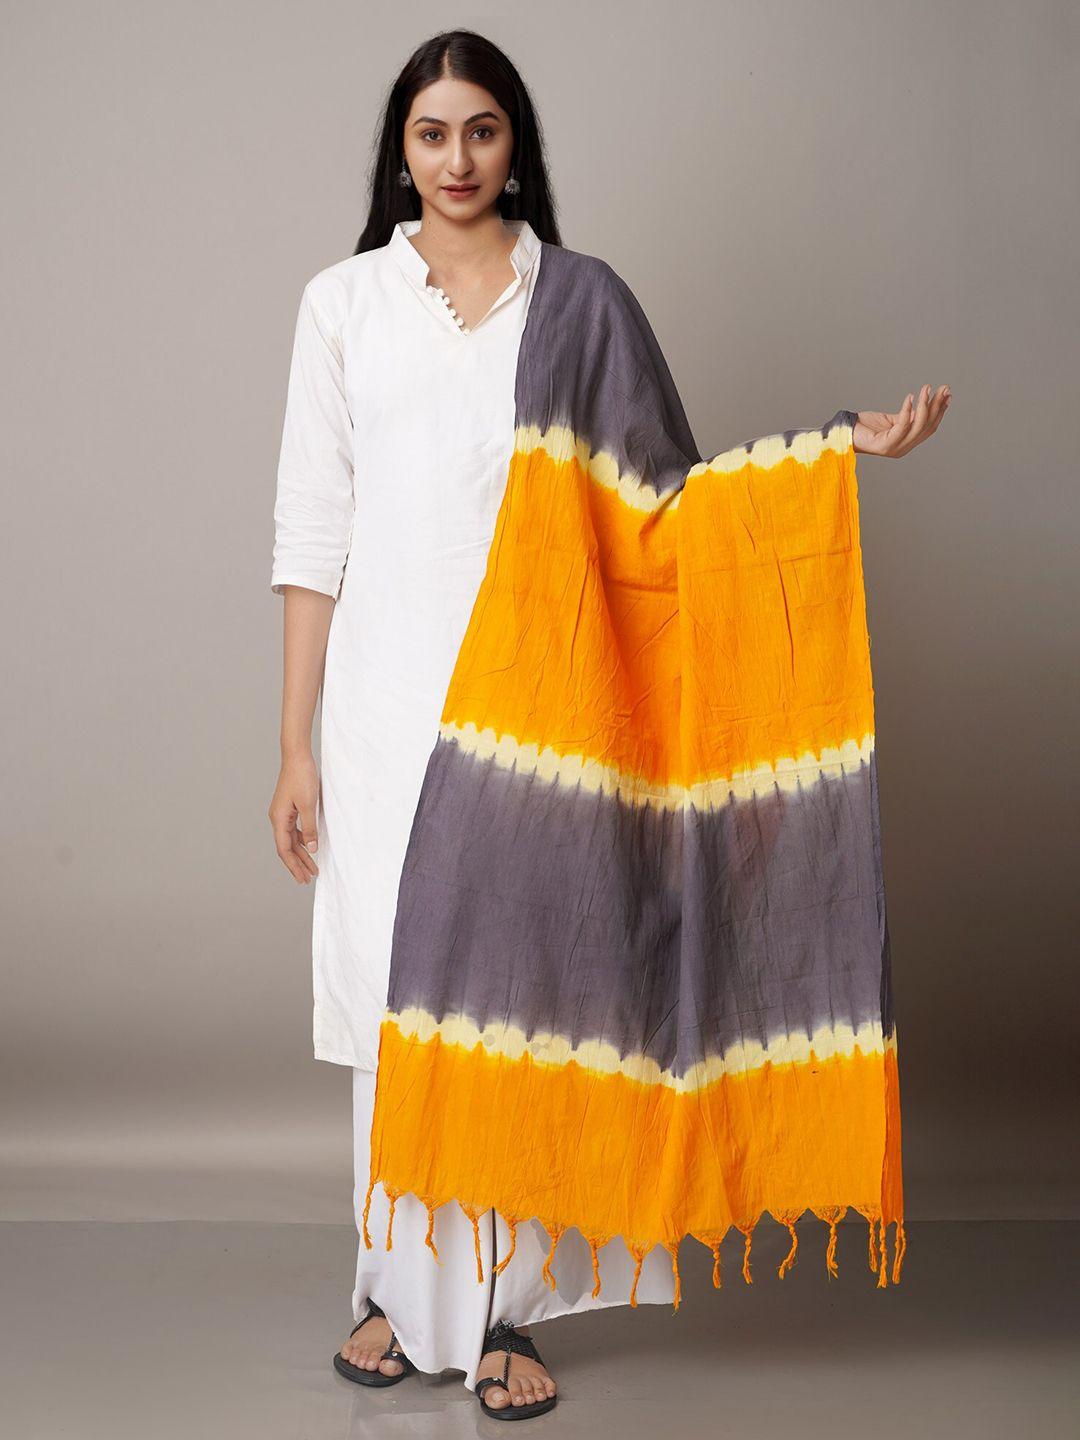 unnati silks grey & orange striped pure cotton shibori dupatta